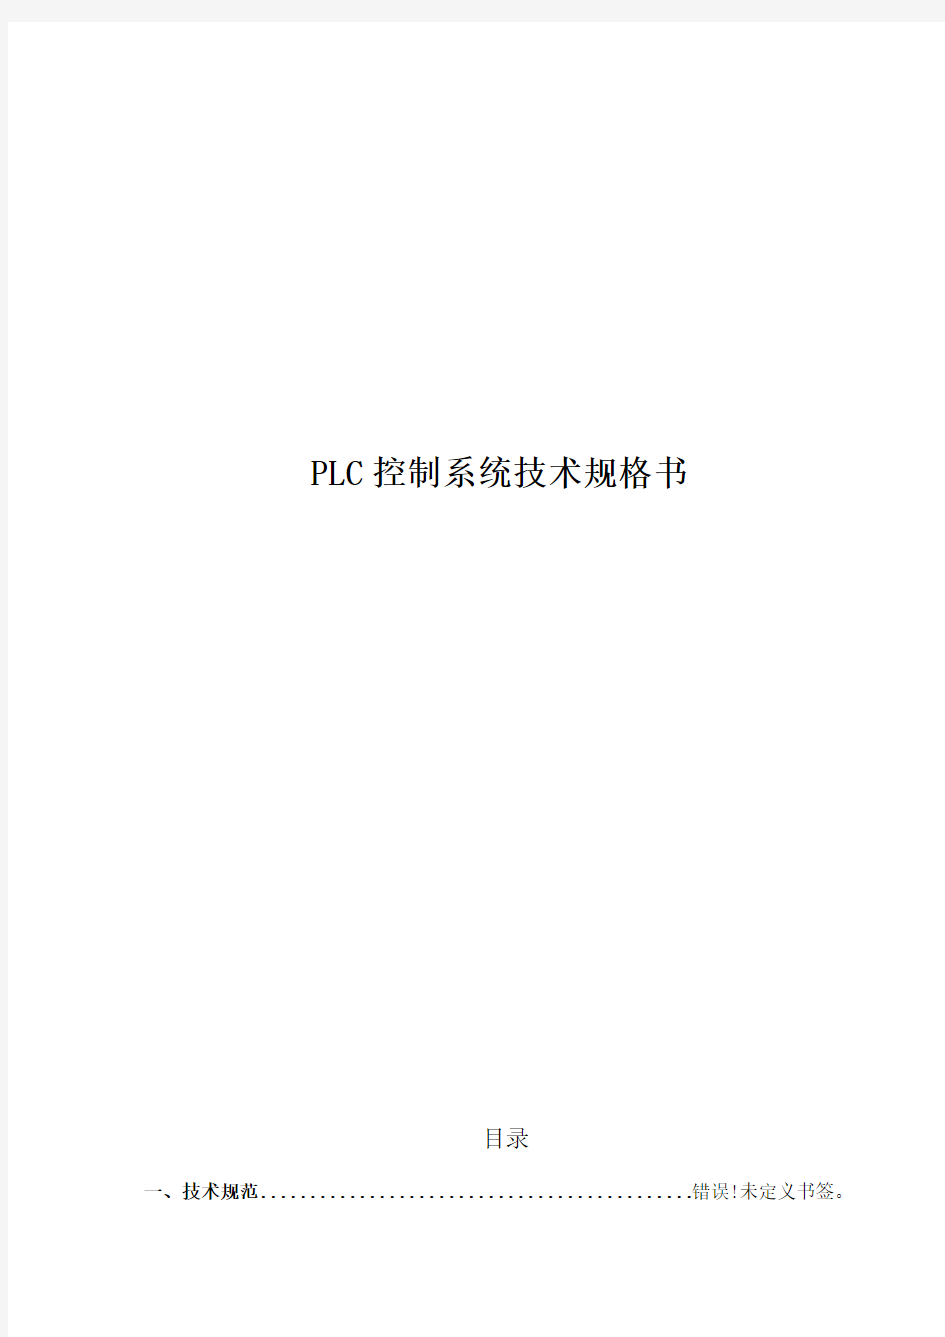 PLC控制柜技术规格书